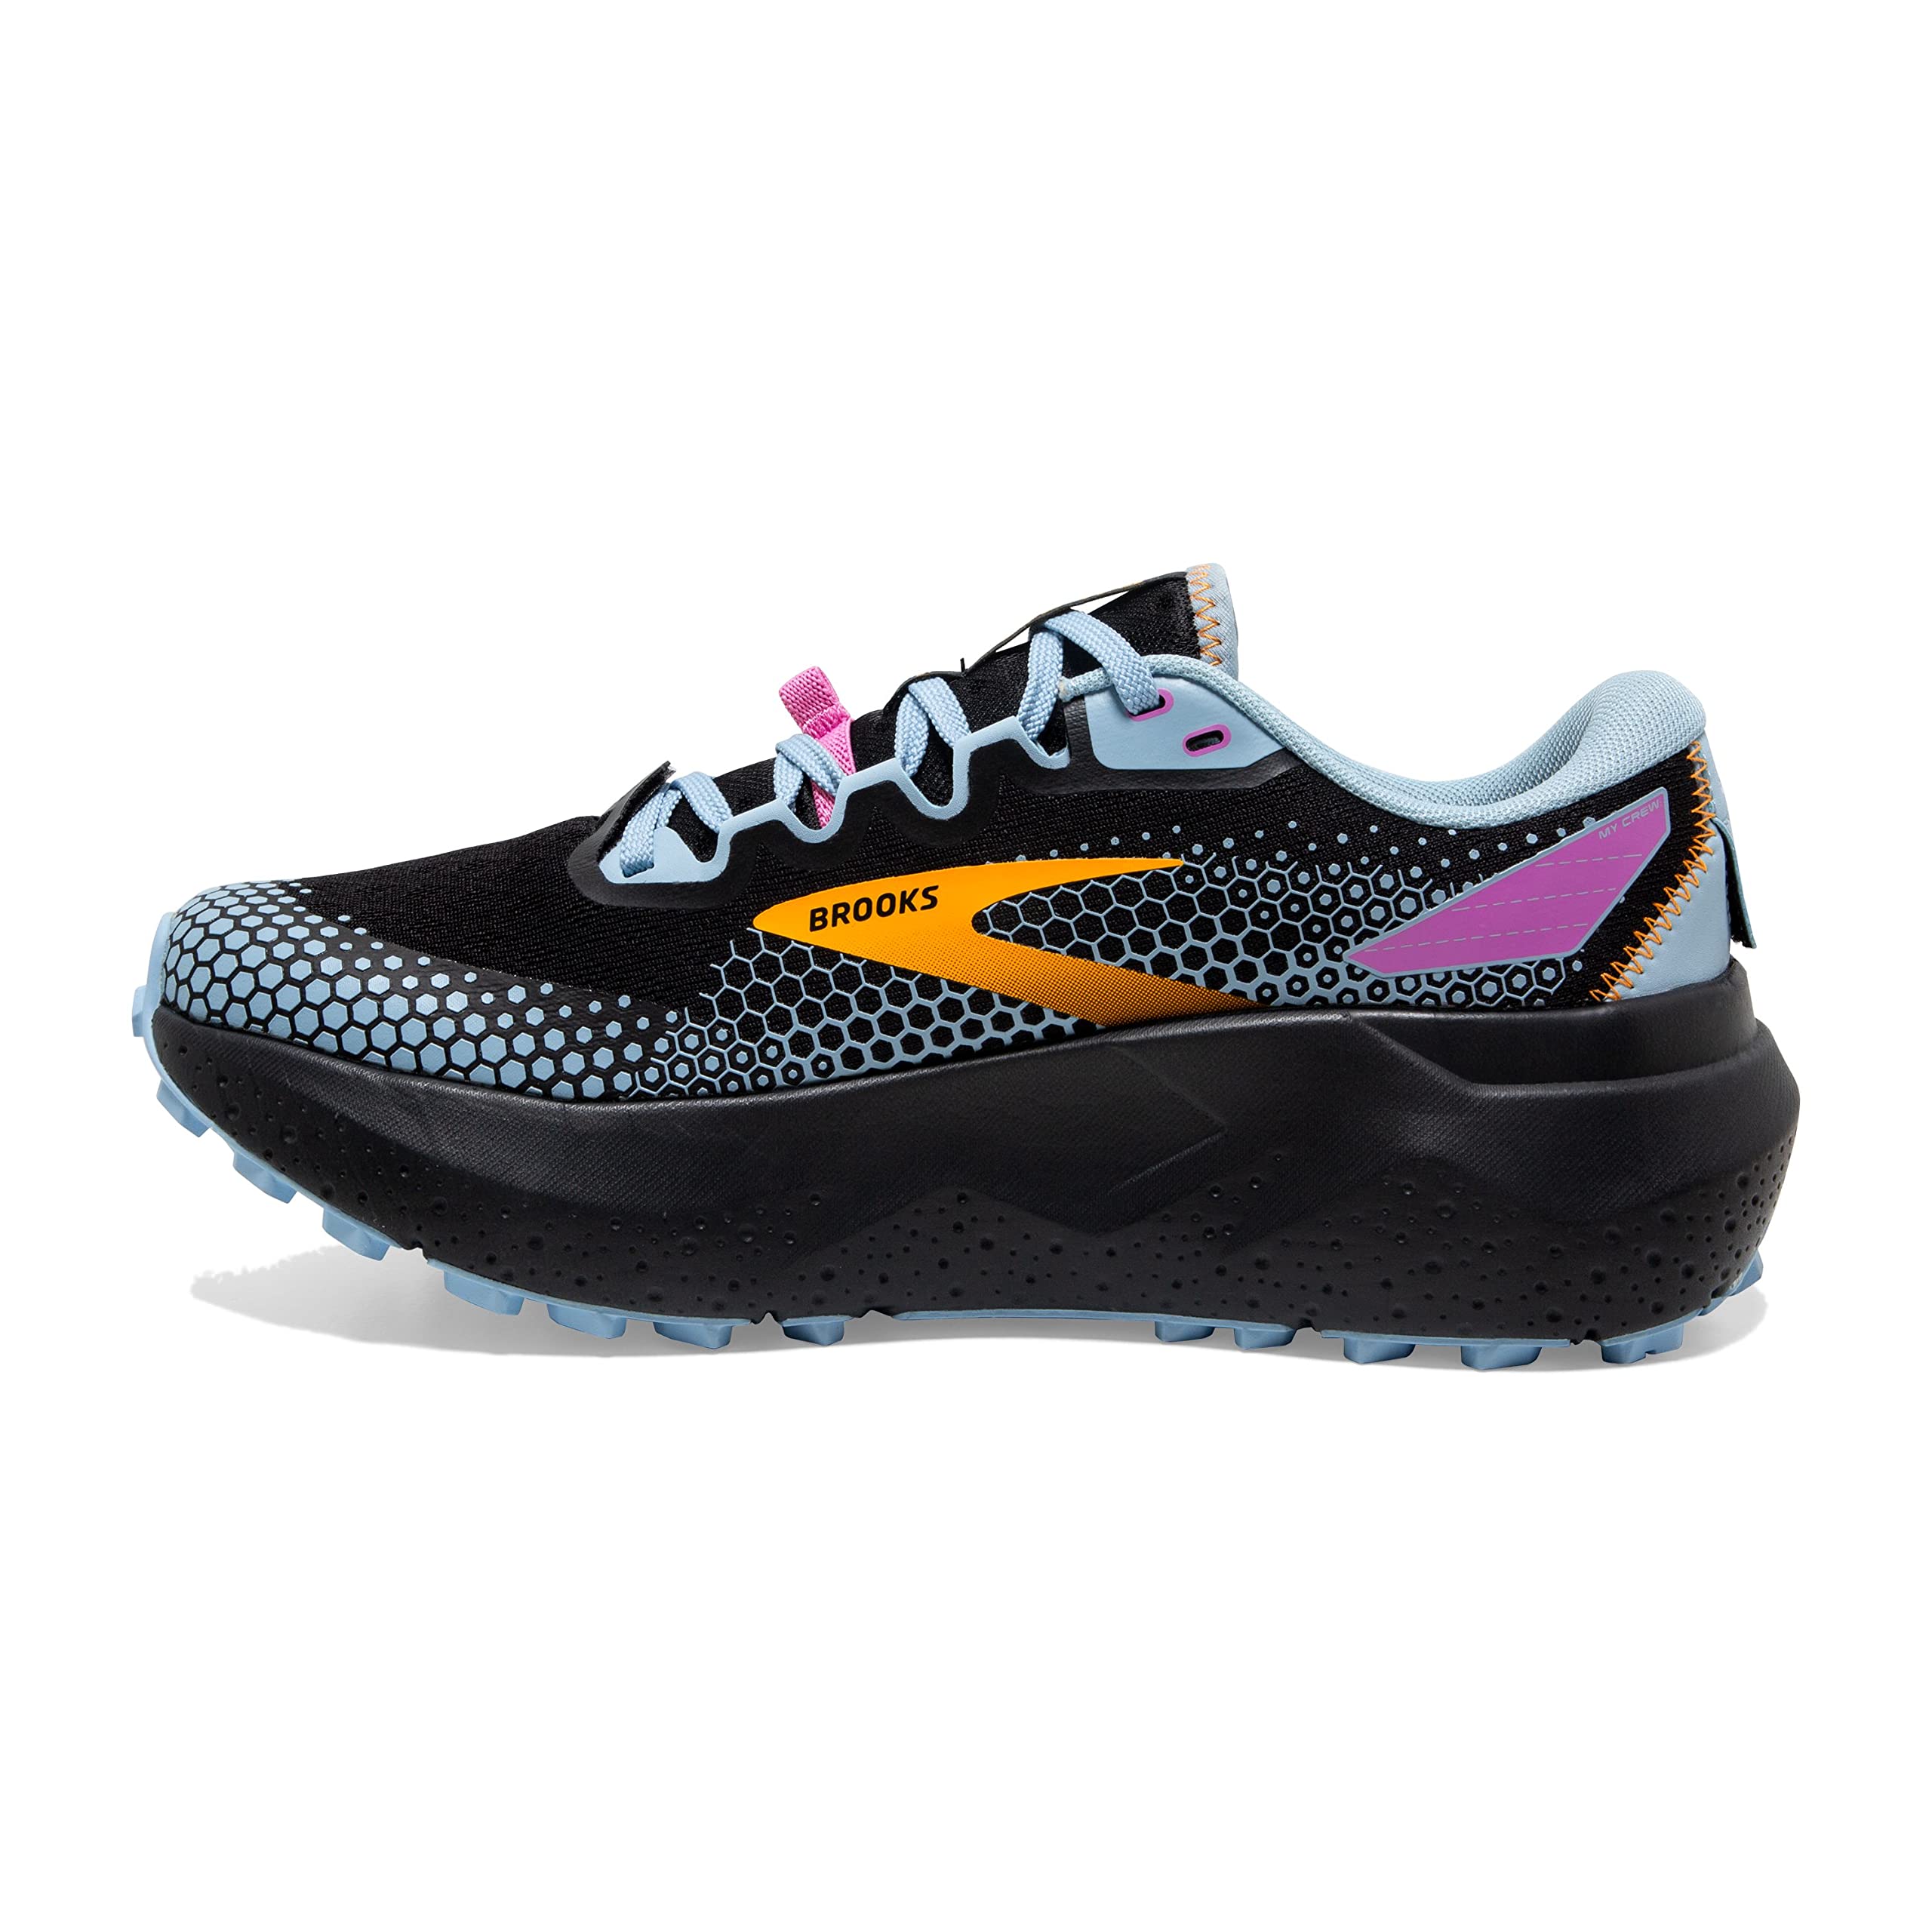 Brooks Women’s Caldera 6 Trail Running Shoe